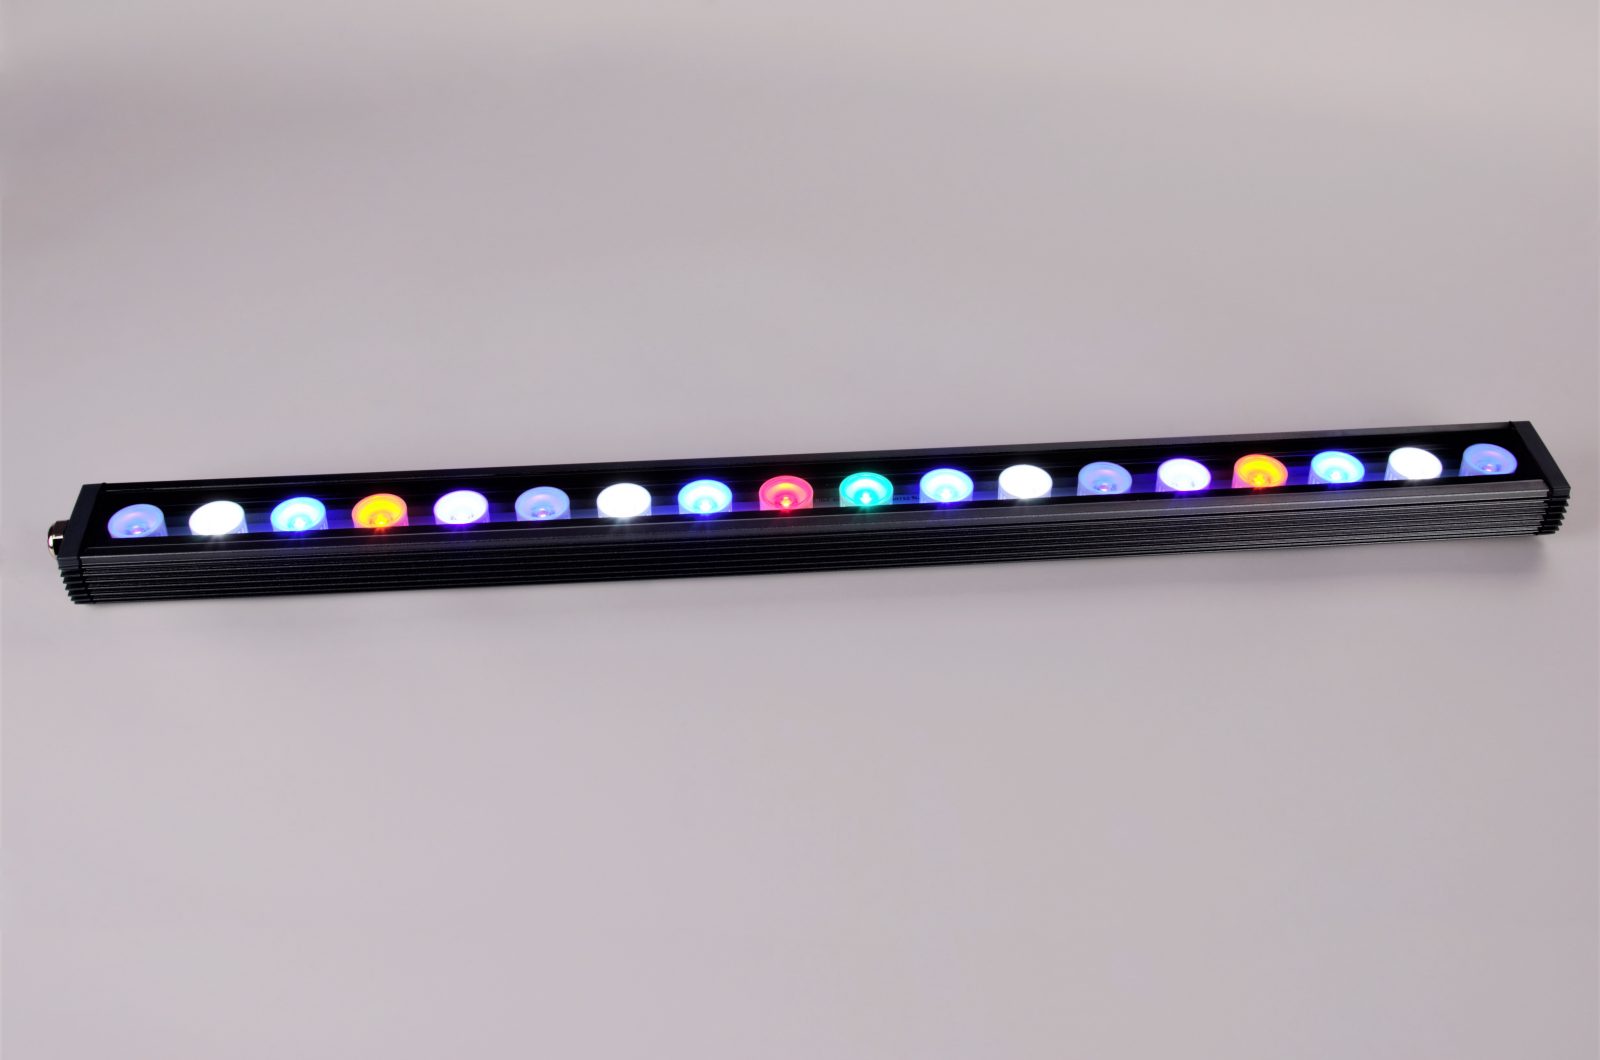 മികച്ച പവിഴപ്പുറ്റുകളുടെ വളർച്ച LED സ്ട്രിപ്പ് 2020